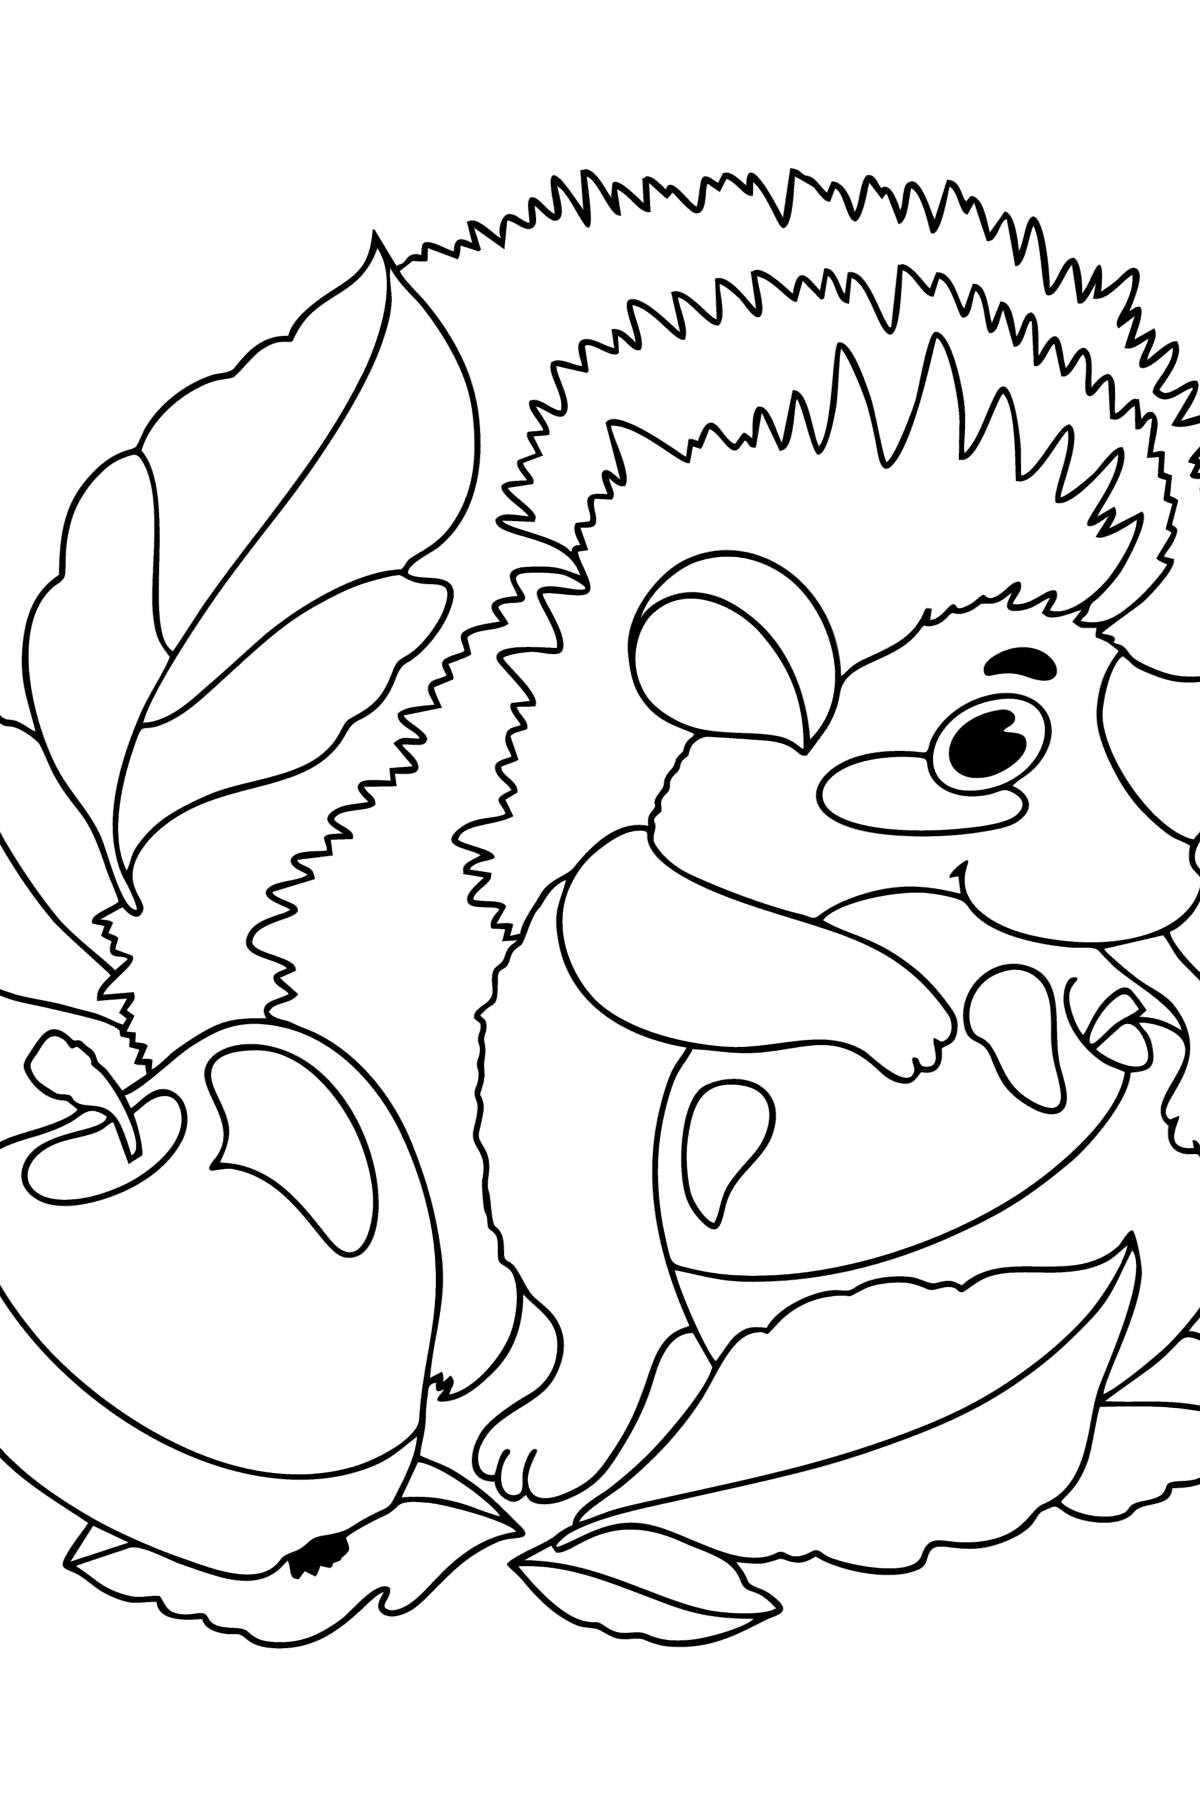 Dibujo Manzana y erizo para colorear - Dibujos para Colorear para Niños